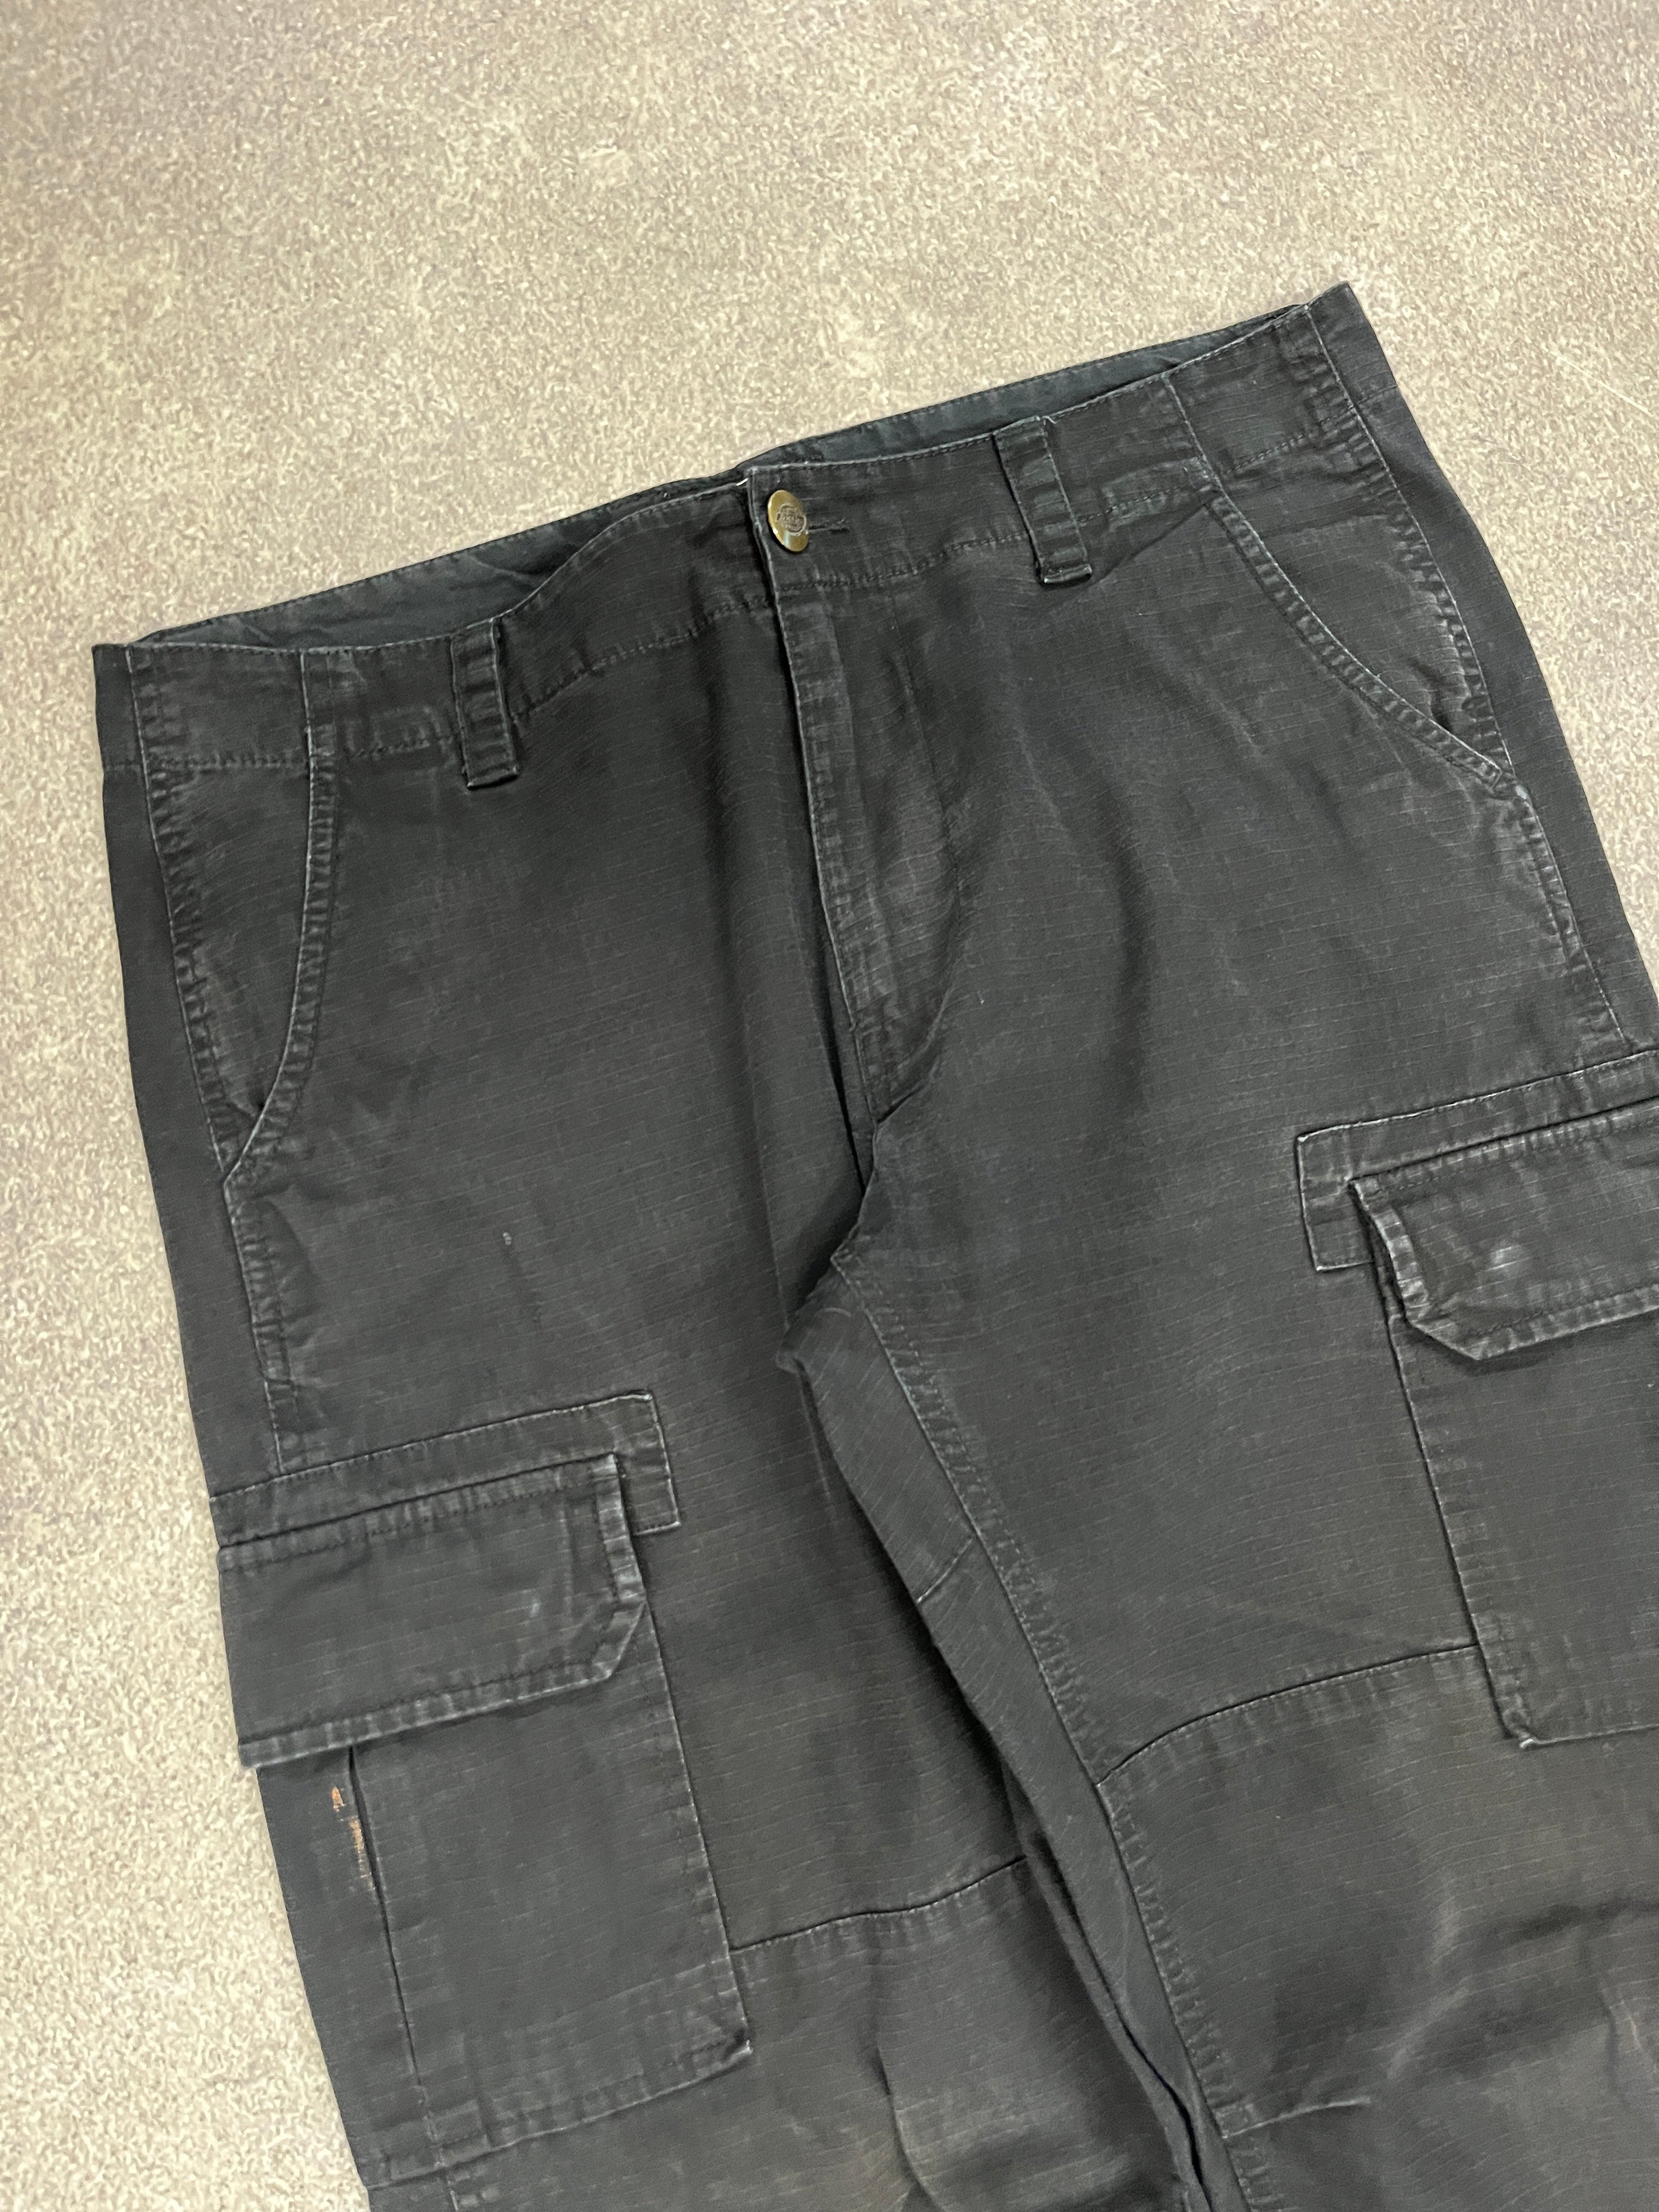 Vintage Dickies Carpenter Pants Black // W34 L34 - RHAGHOUSE VINTAGE